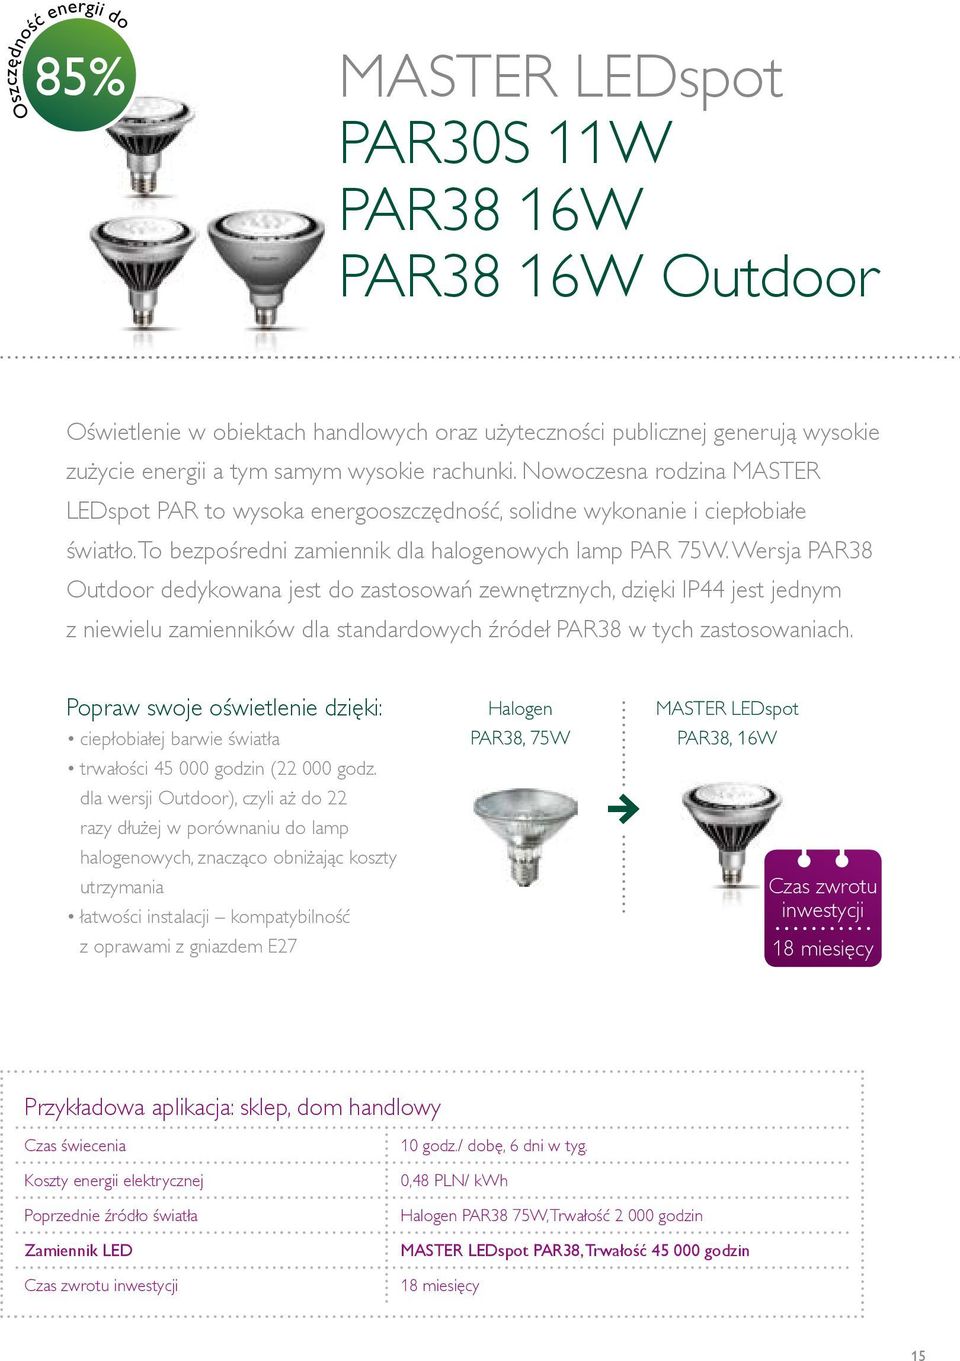 Wersja PAR38 Outdoor dedykowana jest do zastosowań zewnętrznych, dzięki IP44 jest jednym z niewielu zamienników dla standardowych źródeł PAR38 w tych zastosowaniach.